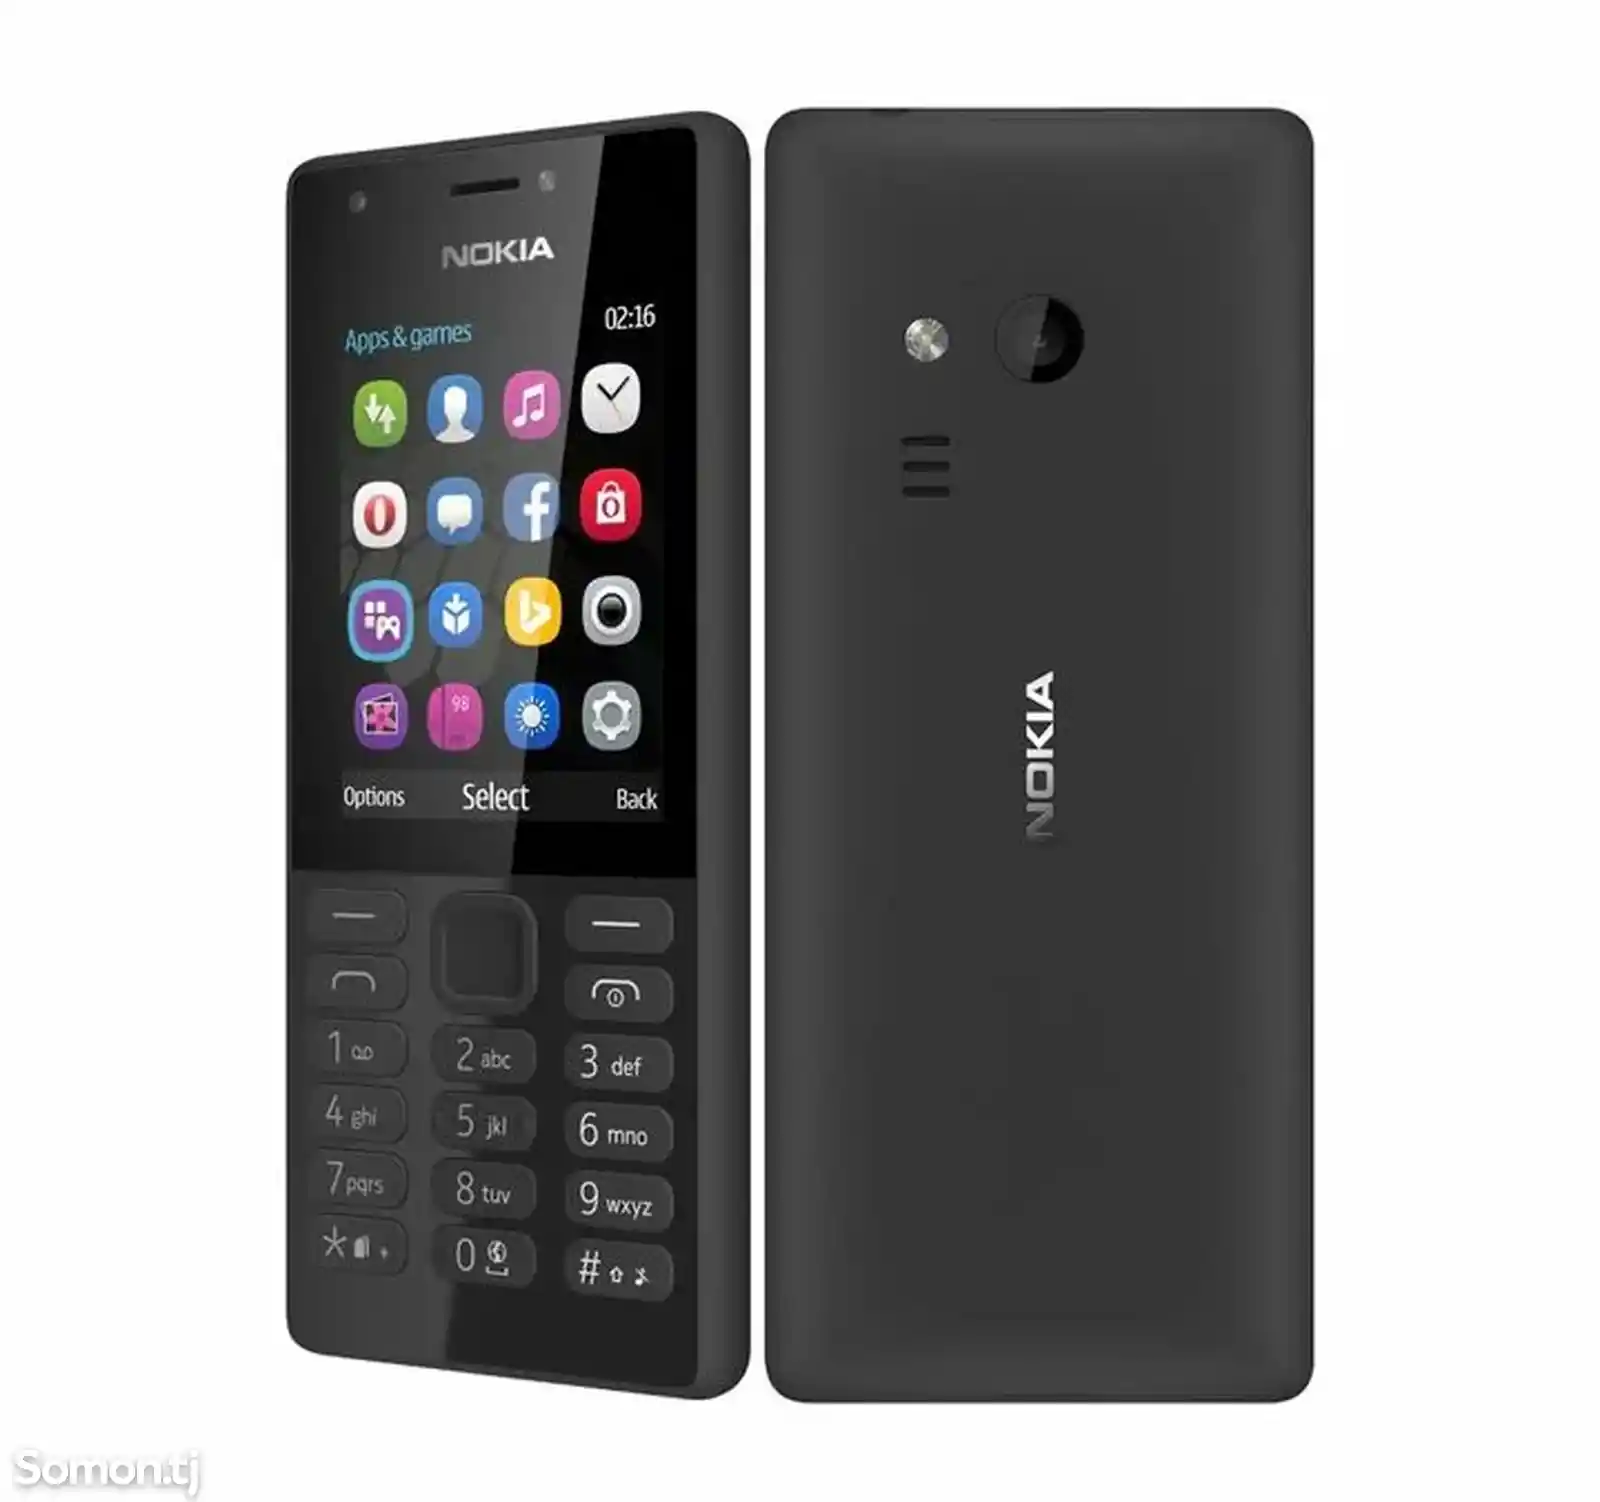 Nokia 216-4